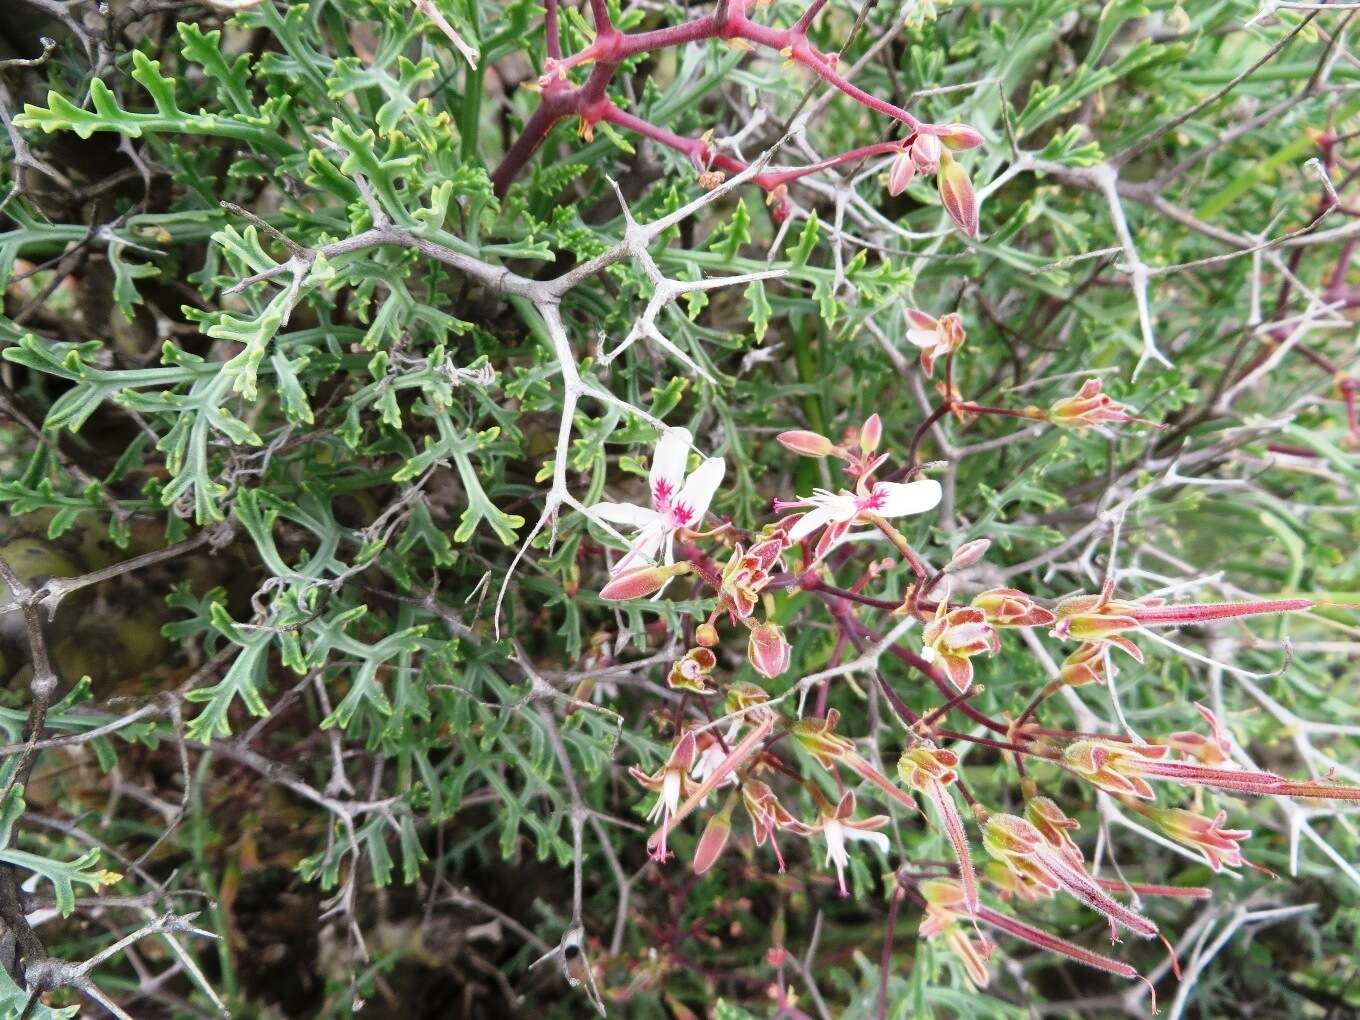 Image of Pelargonium crithmifolium J. E. Sm.